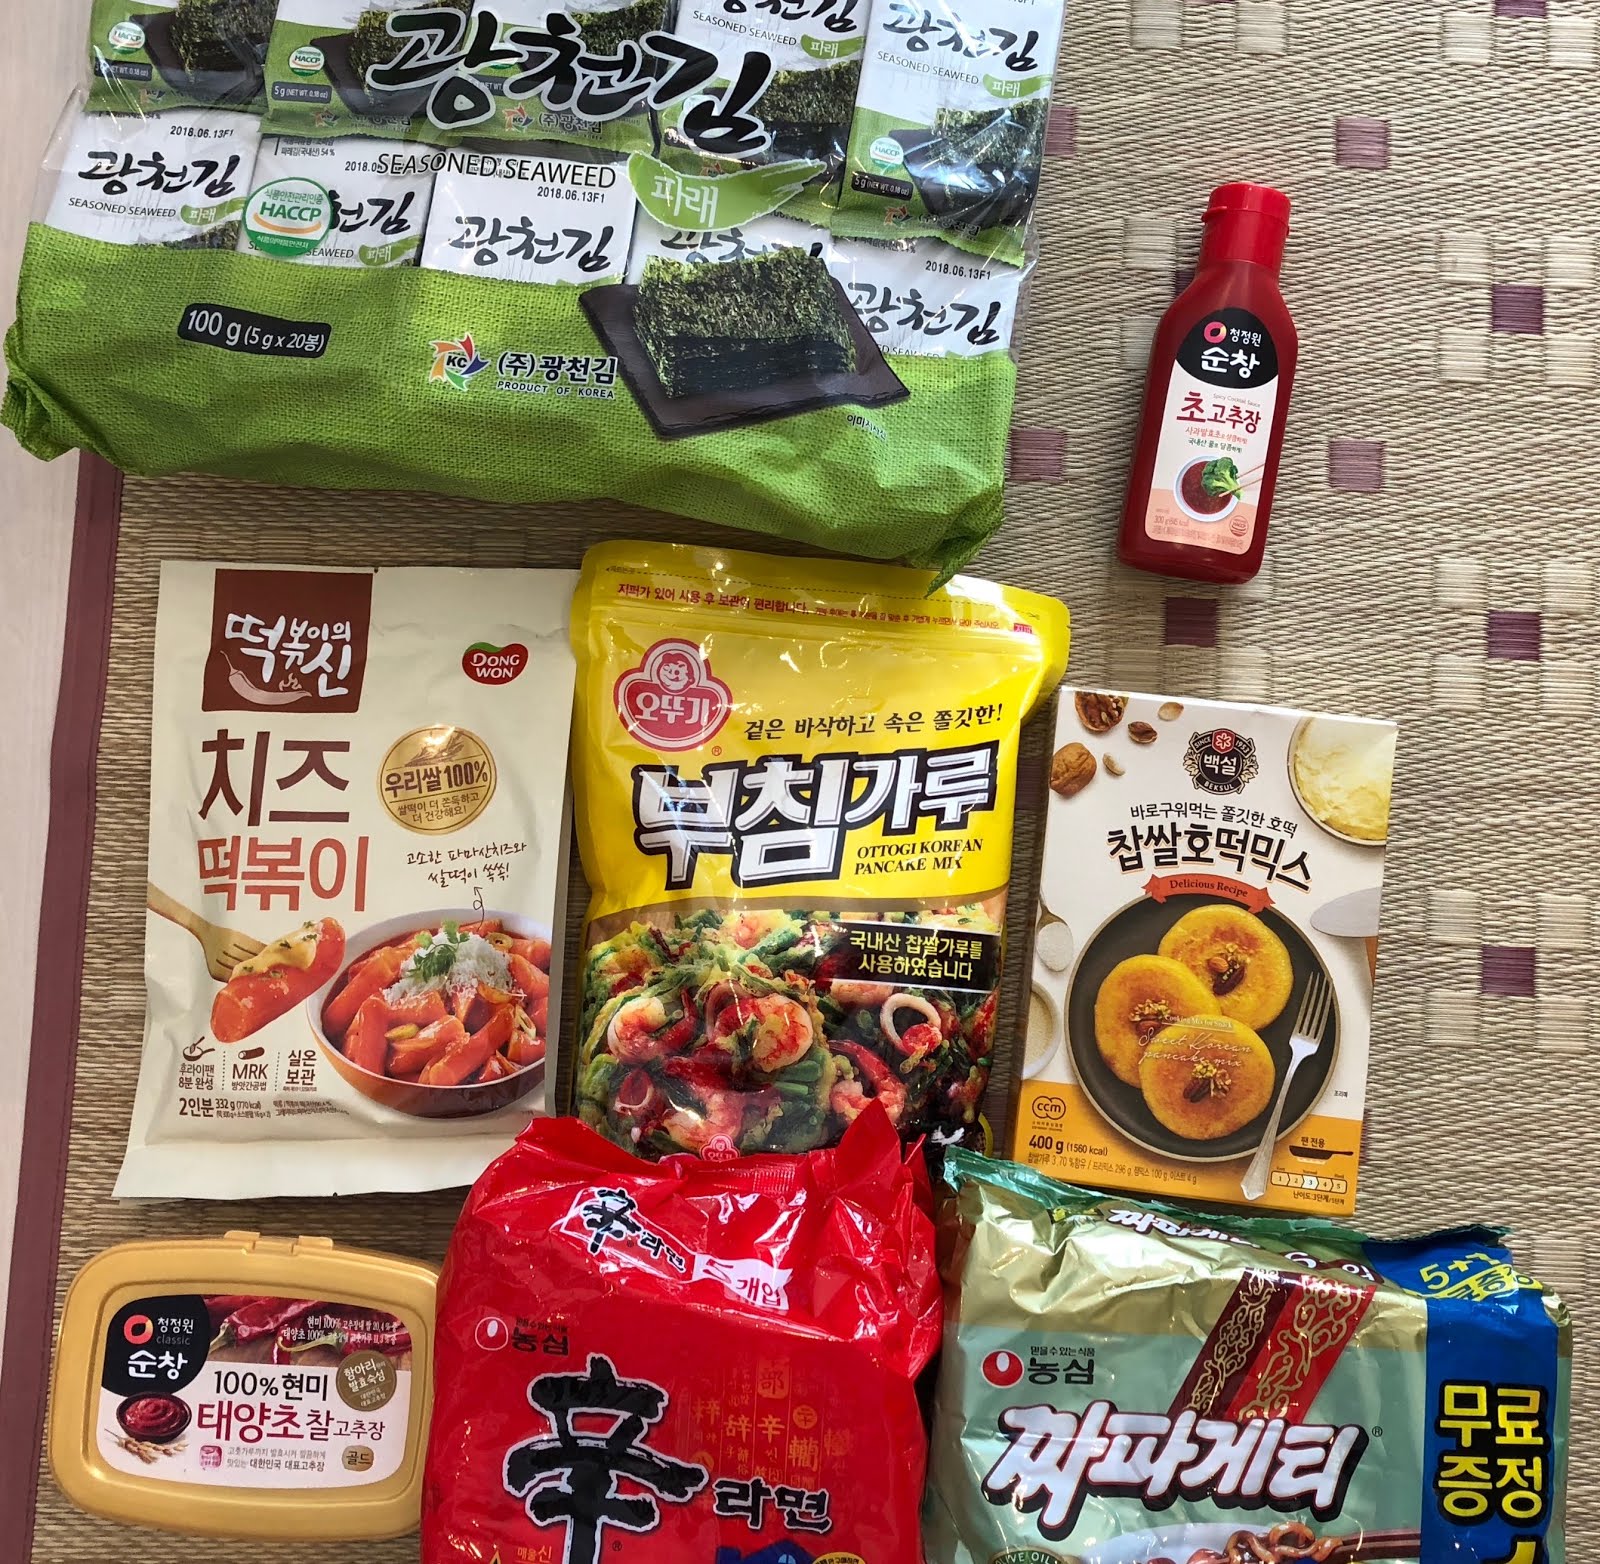 韓国旅行購入品 食べ物編 日韓カップル 한일커플 Buruburu Blog